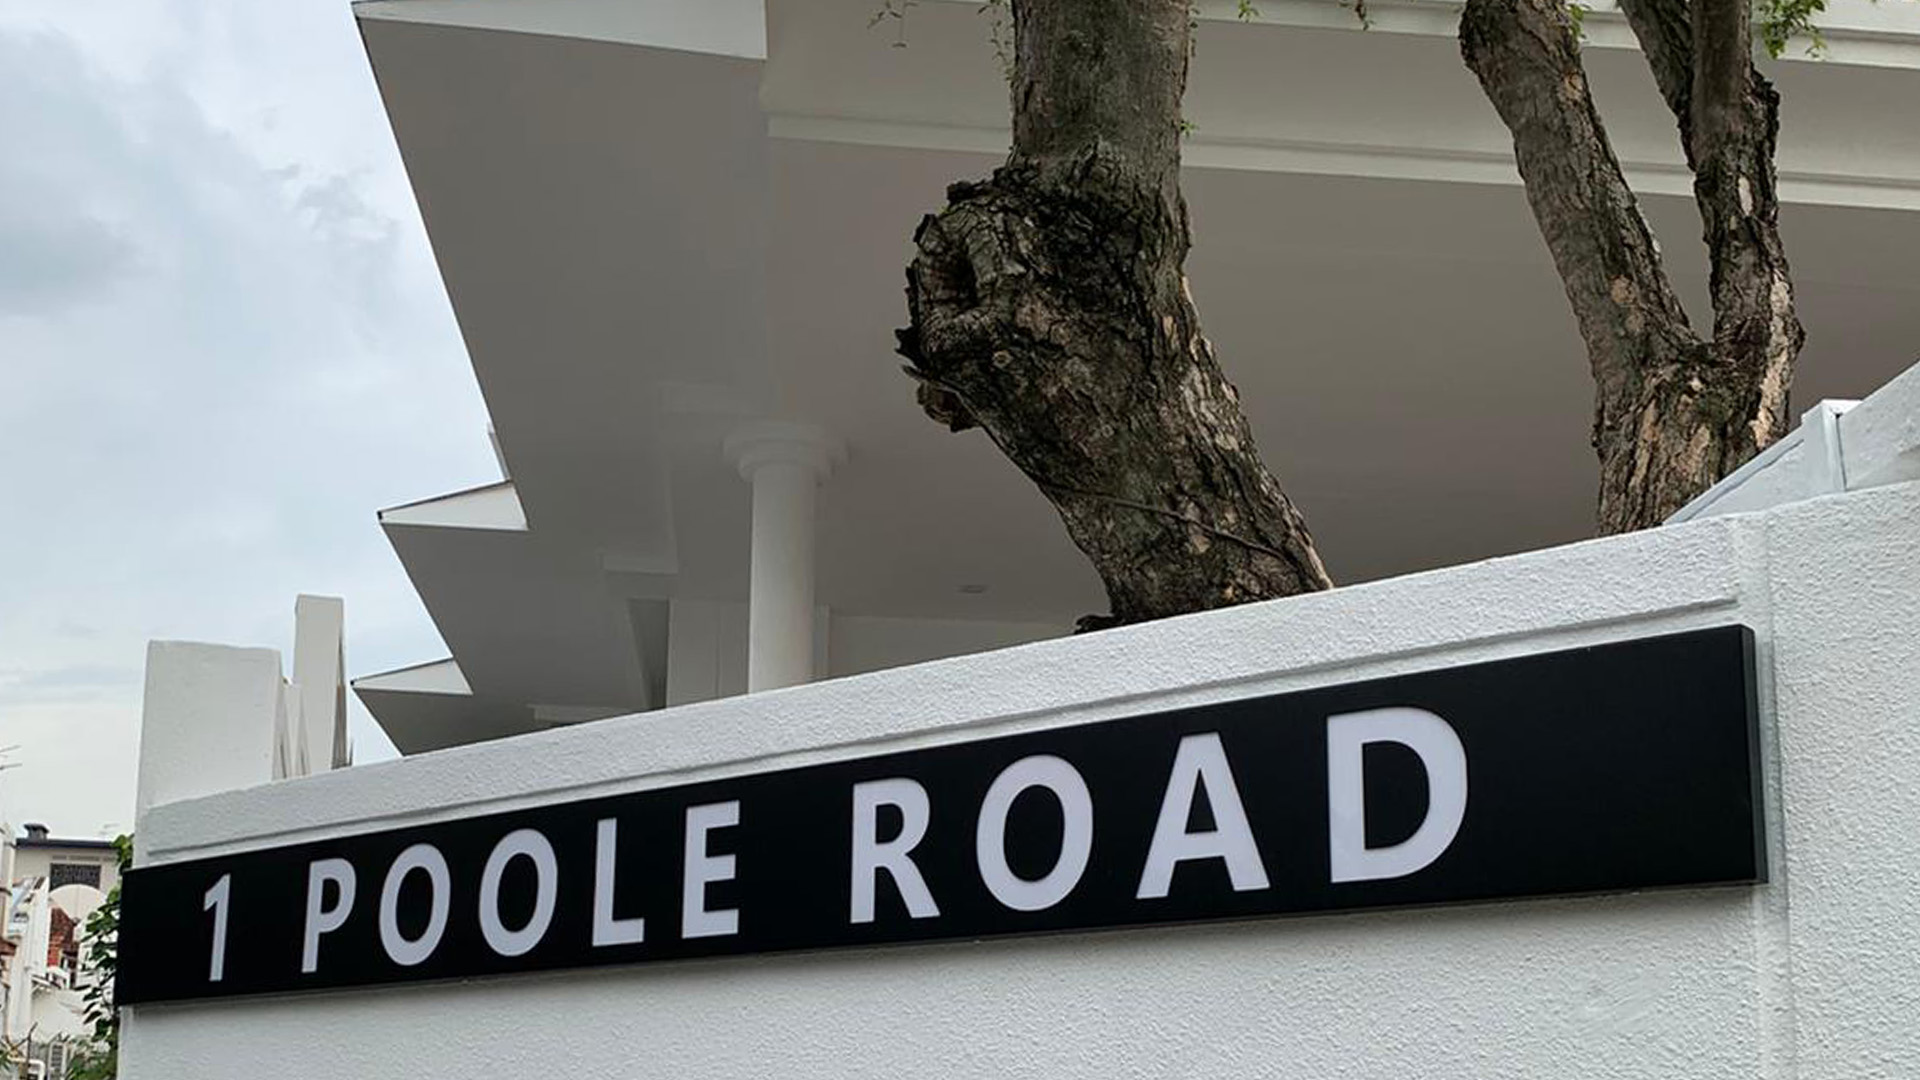 1 Poole Road Singapore